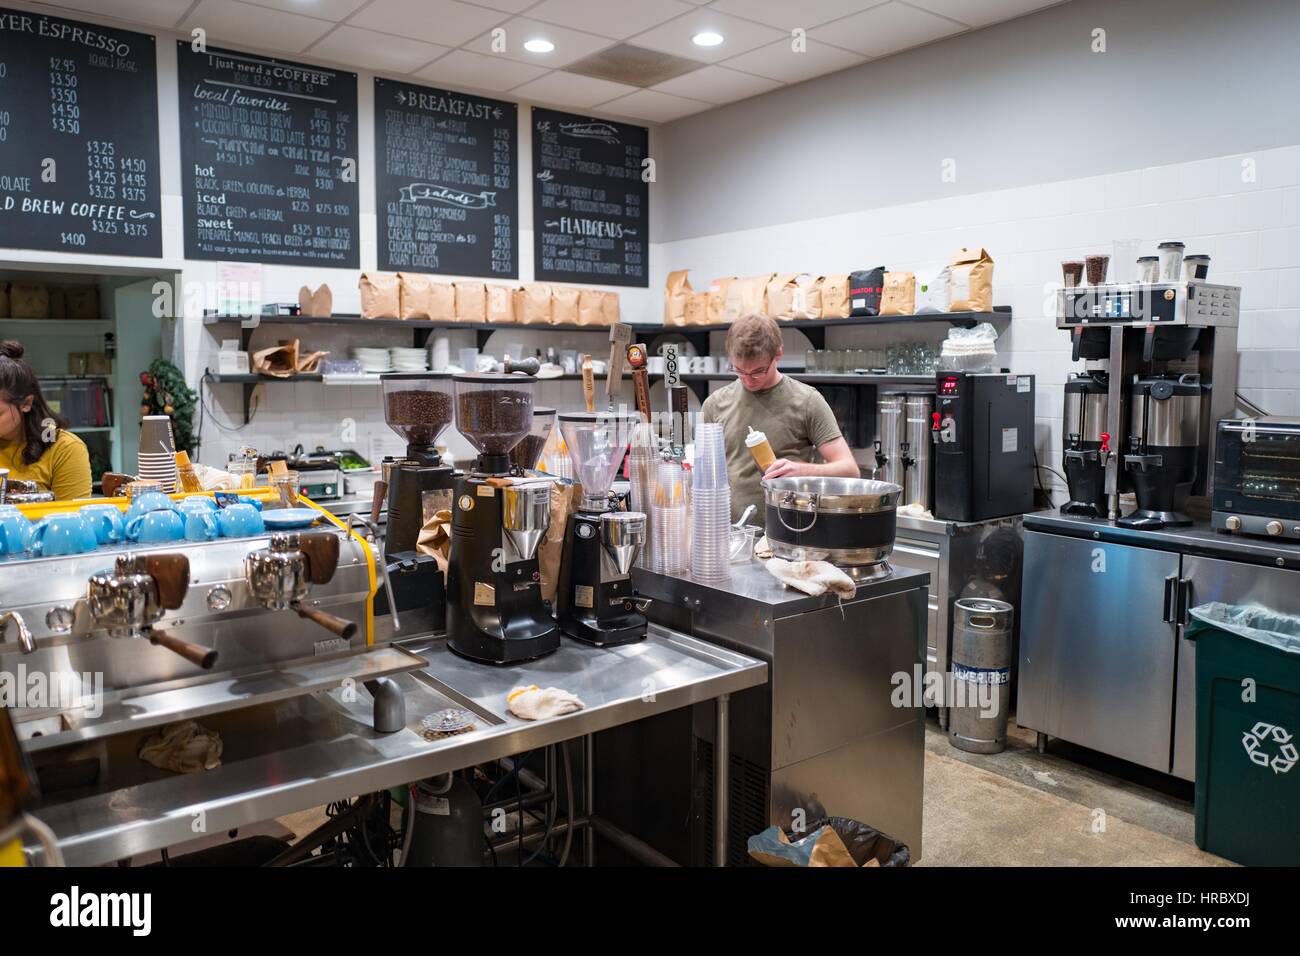 Un barista prépare une boisson à l'intérieur d'un café expresso, un café branché au centre-ville de Walnut Creek, Californie, le 3 décembre 2016. Café gourmand boutiques sont souvent un point central de la vie communautaire dans la région de San Francisco. Banque D'Images